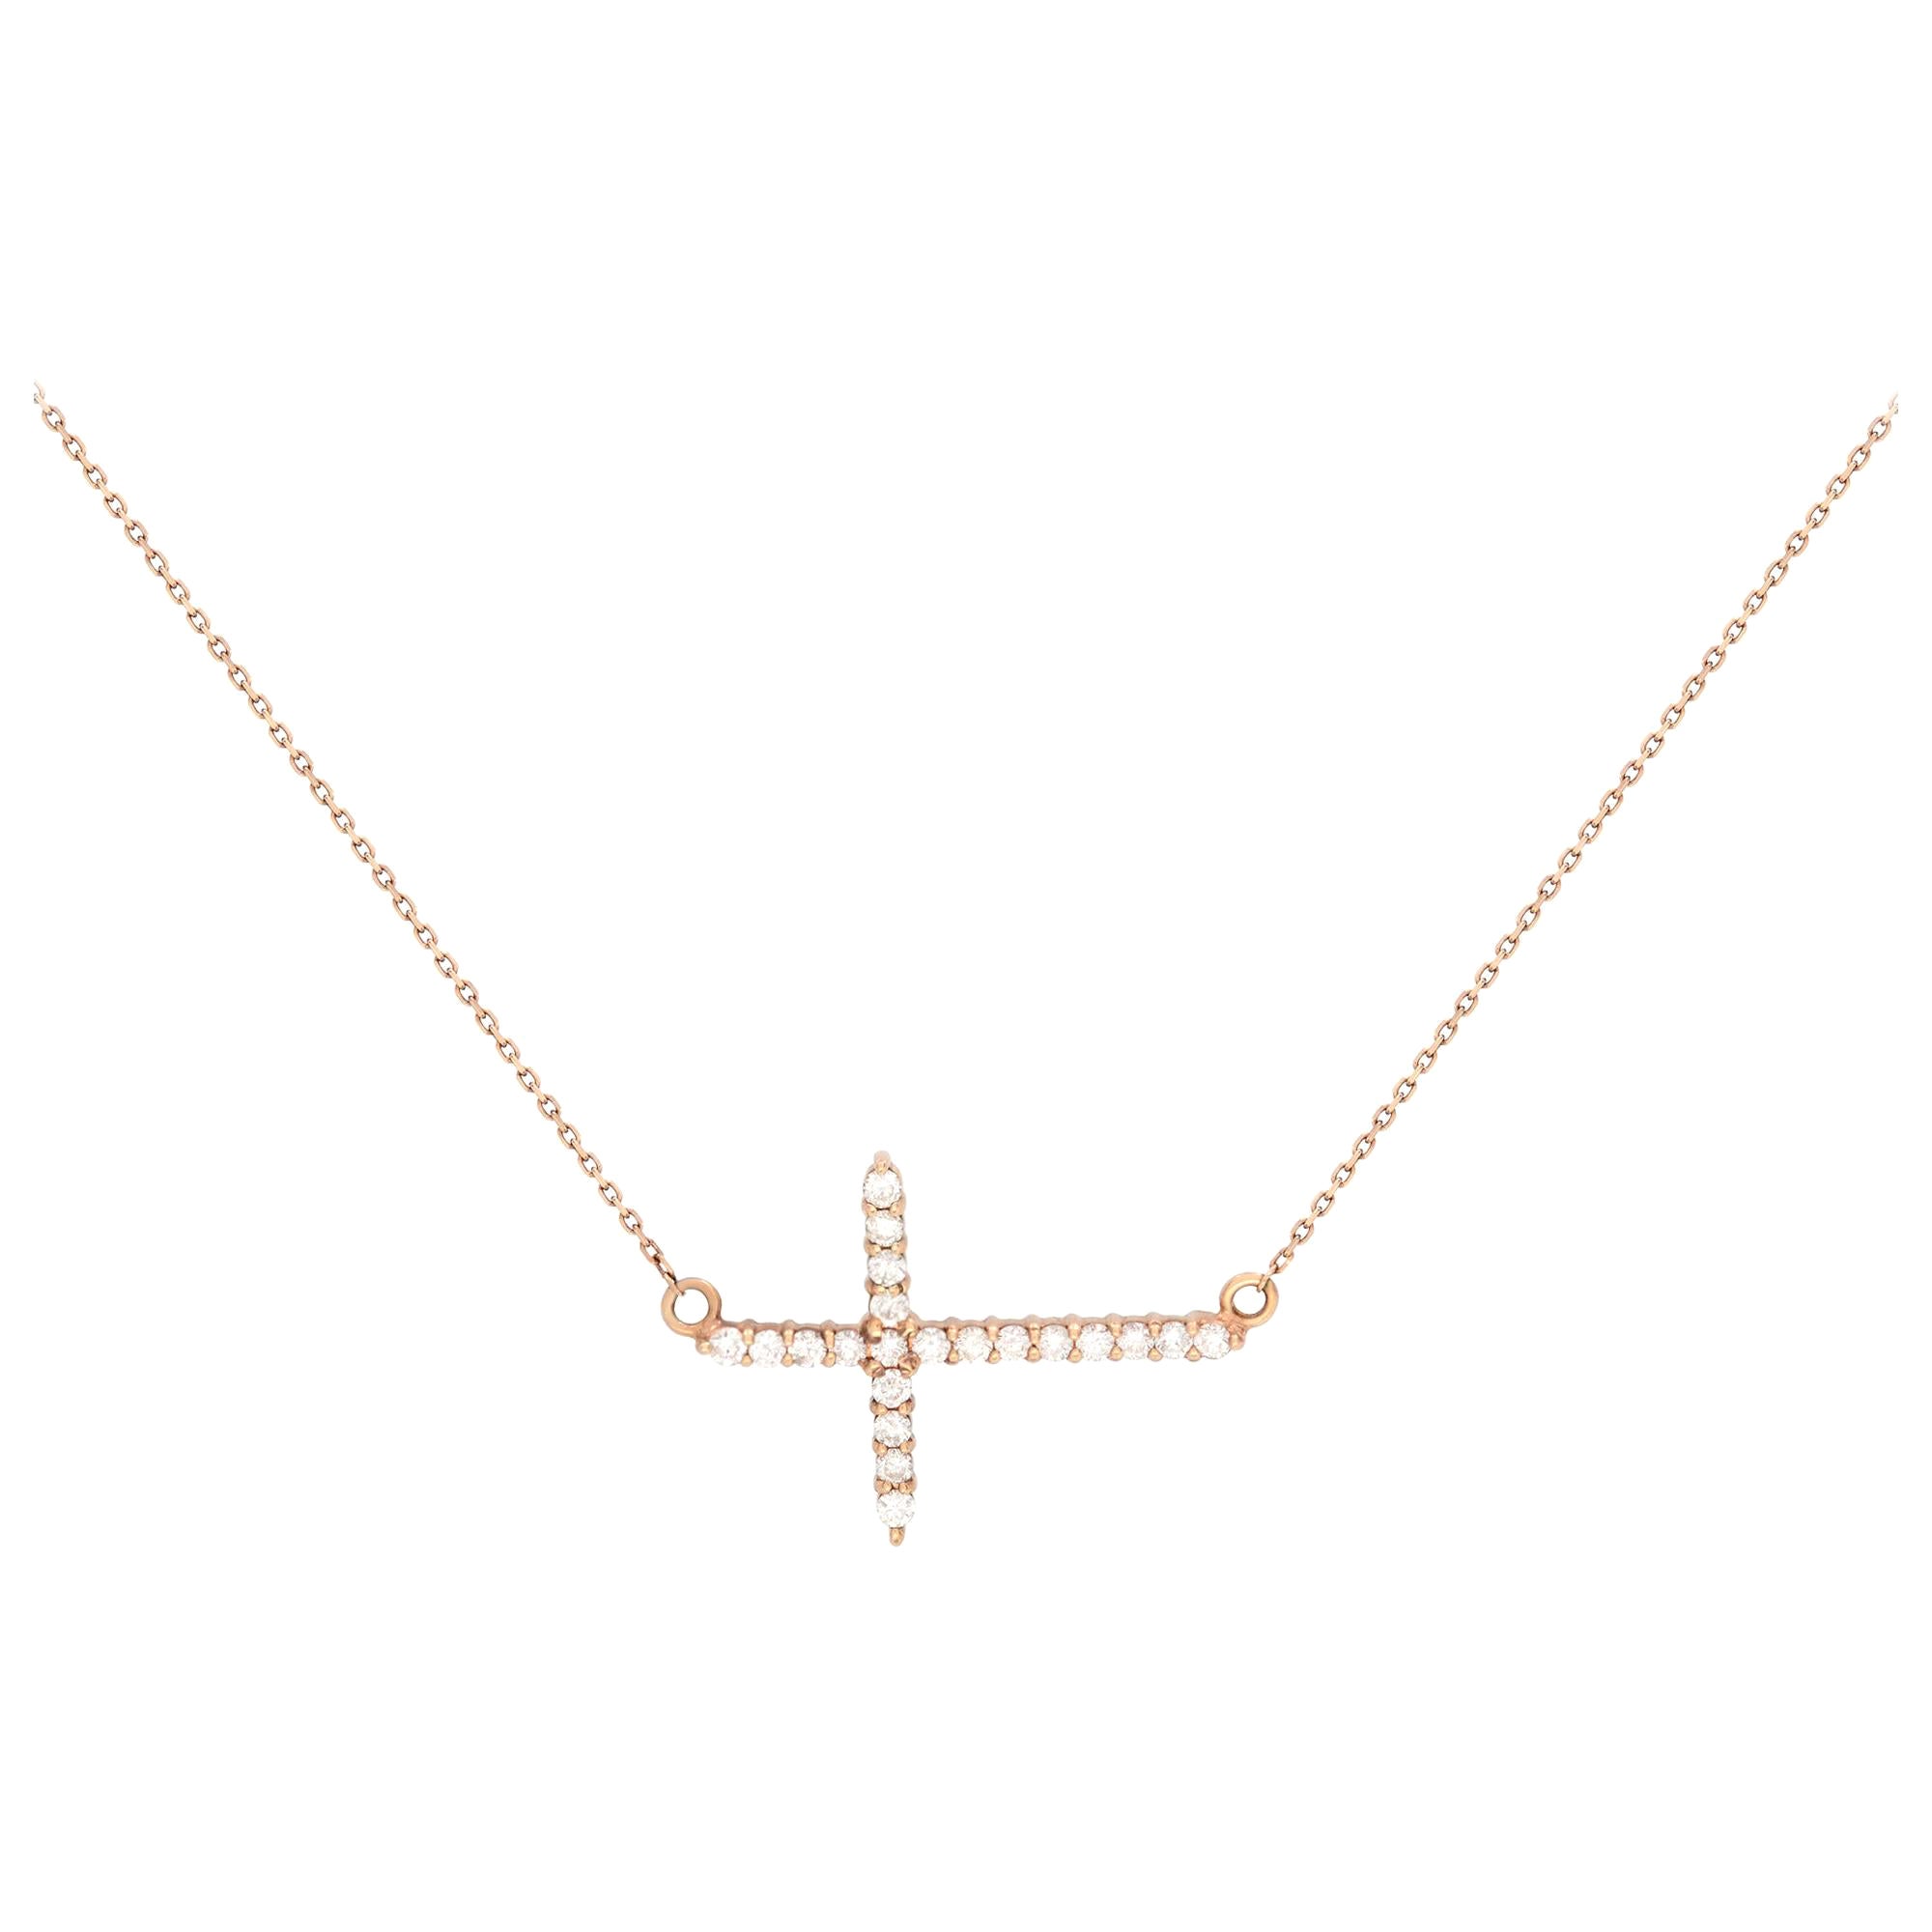 Rachel Koen 14K Rose Gold Diamond Ladies Side-Way Cross Necklace 0.28cttw For Sale